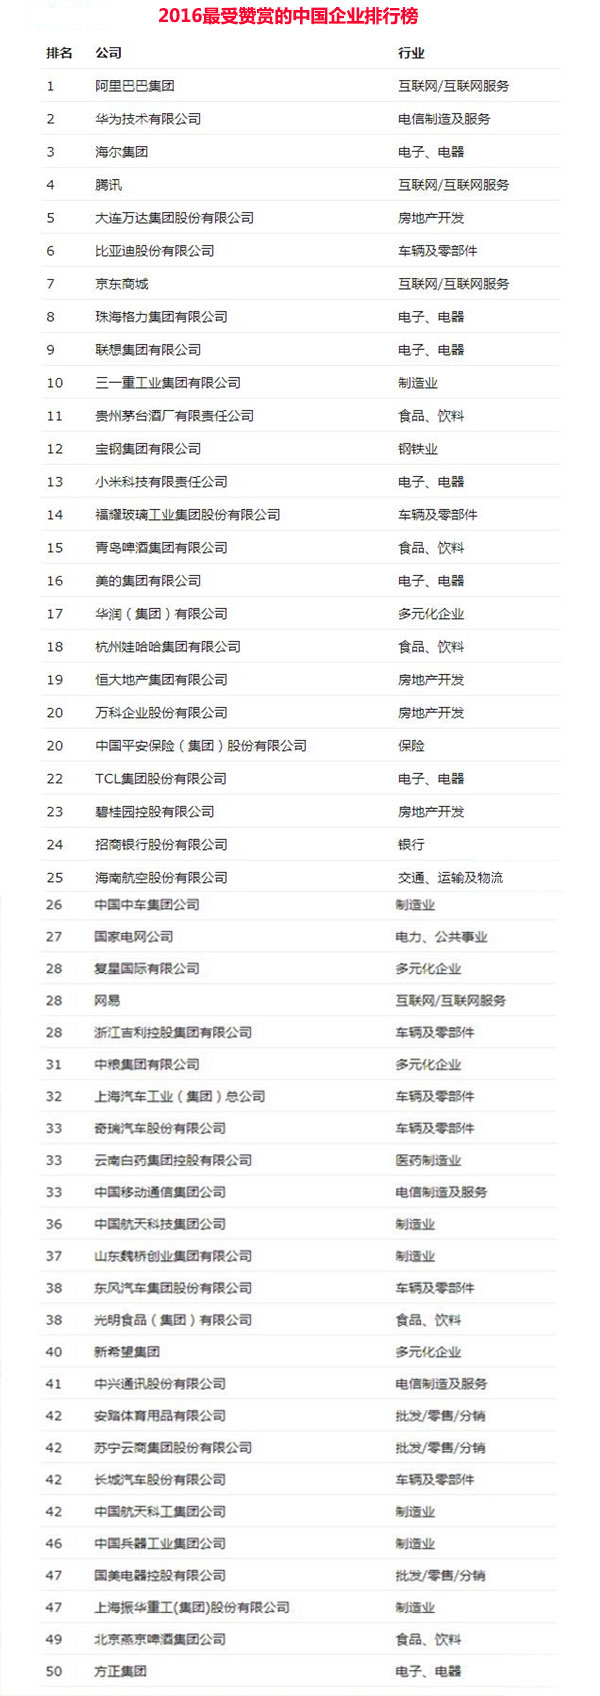 2016年最受赞赏的中国企业排行榜